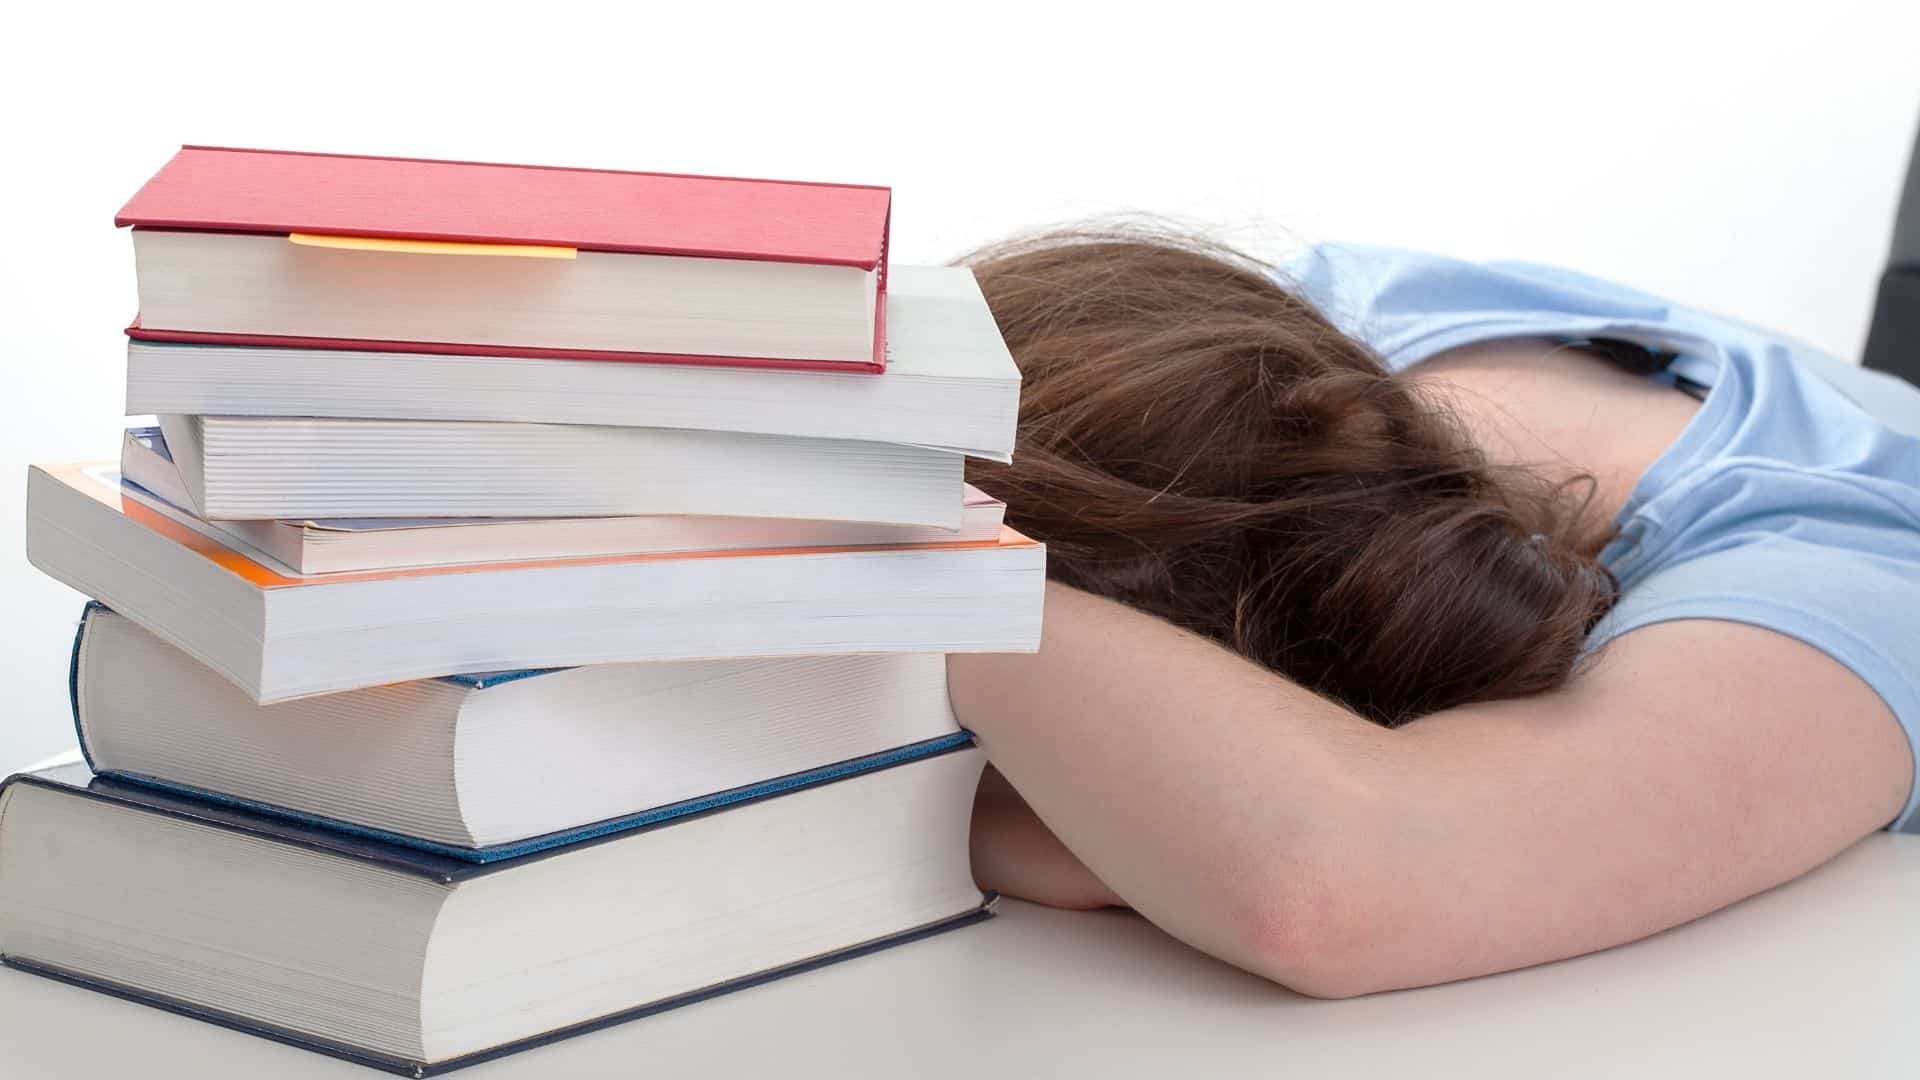 Uma criança debruçando sua cabeça numa mesa com uma pilha de livros.